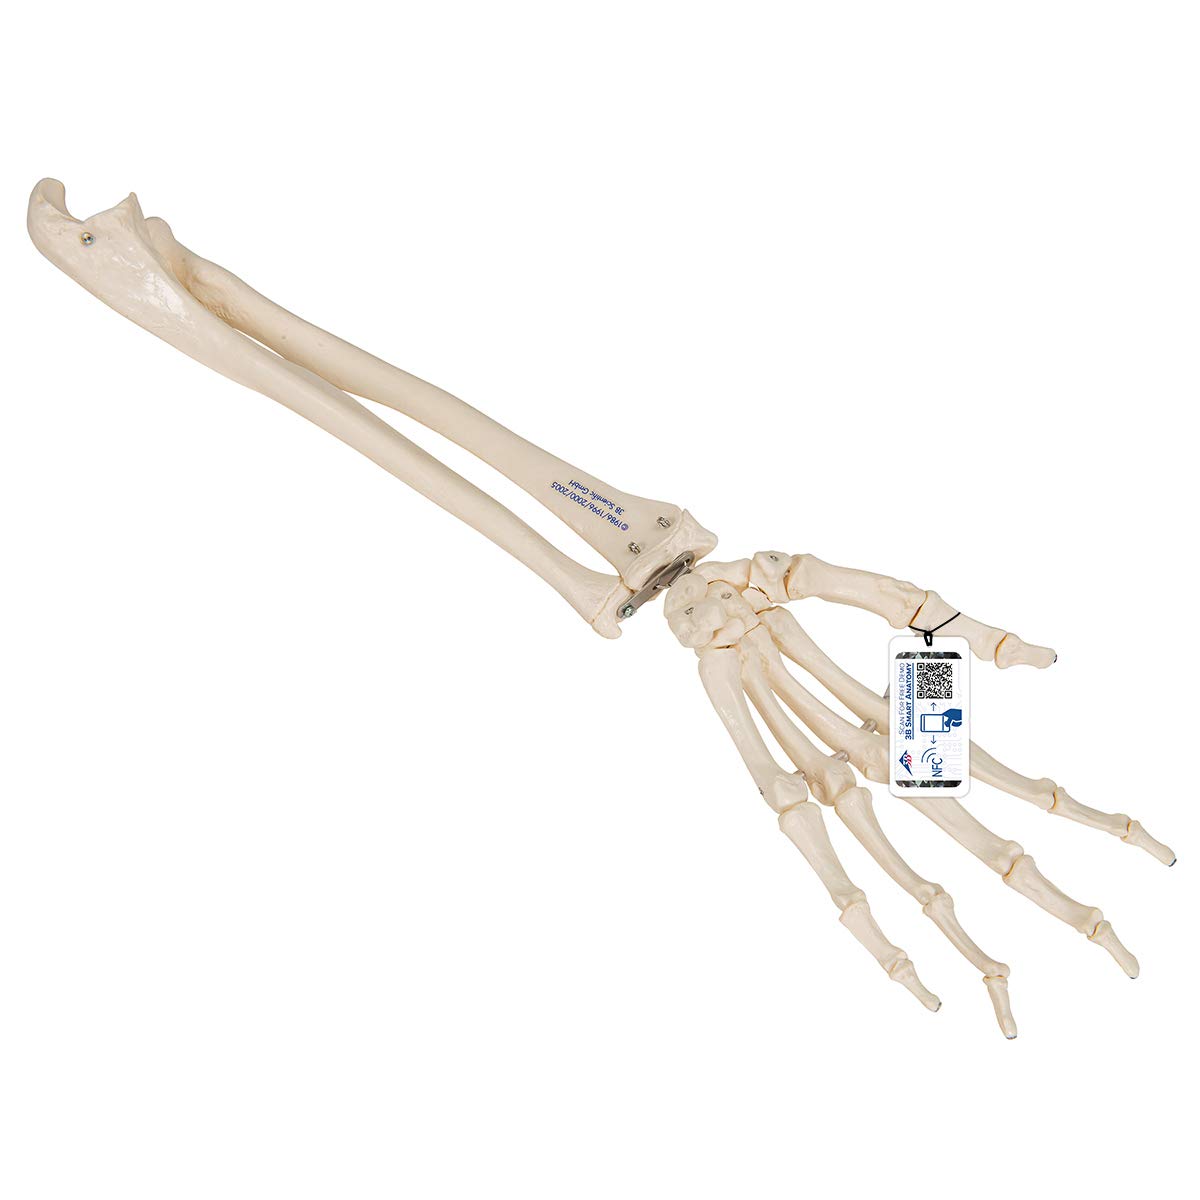 3B Scientific Menschliche Anatomie - Handskelett mit Unterarm, elastisch montiert + kostenlose Anatomie App - 3B Smart Anatomy